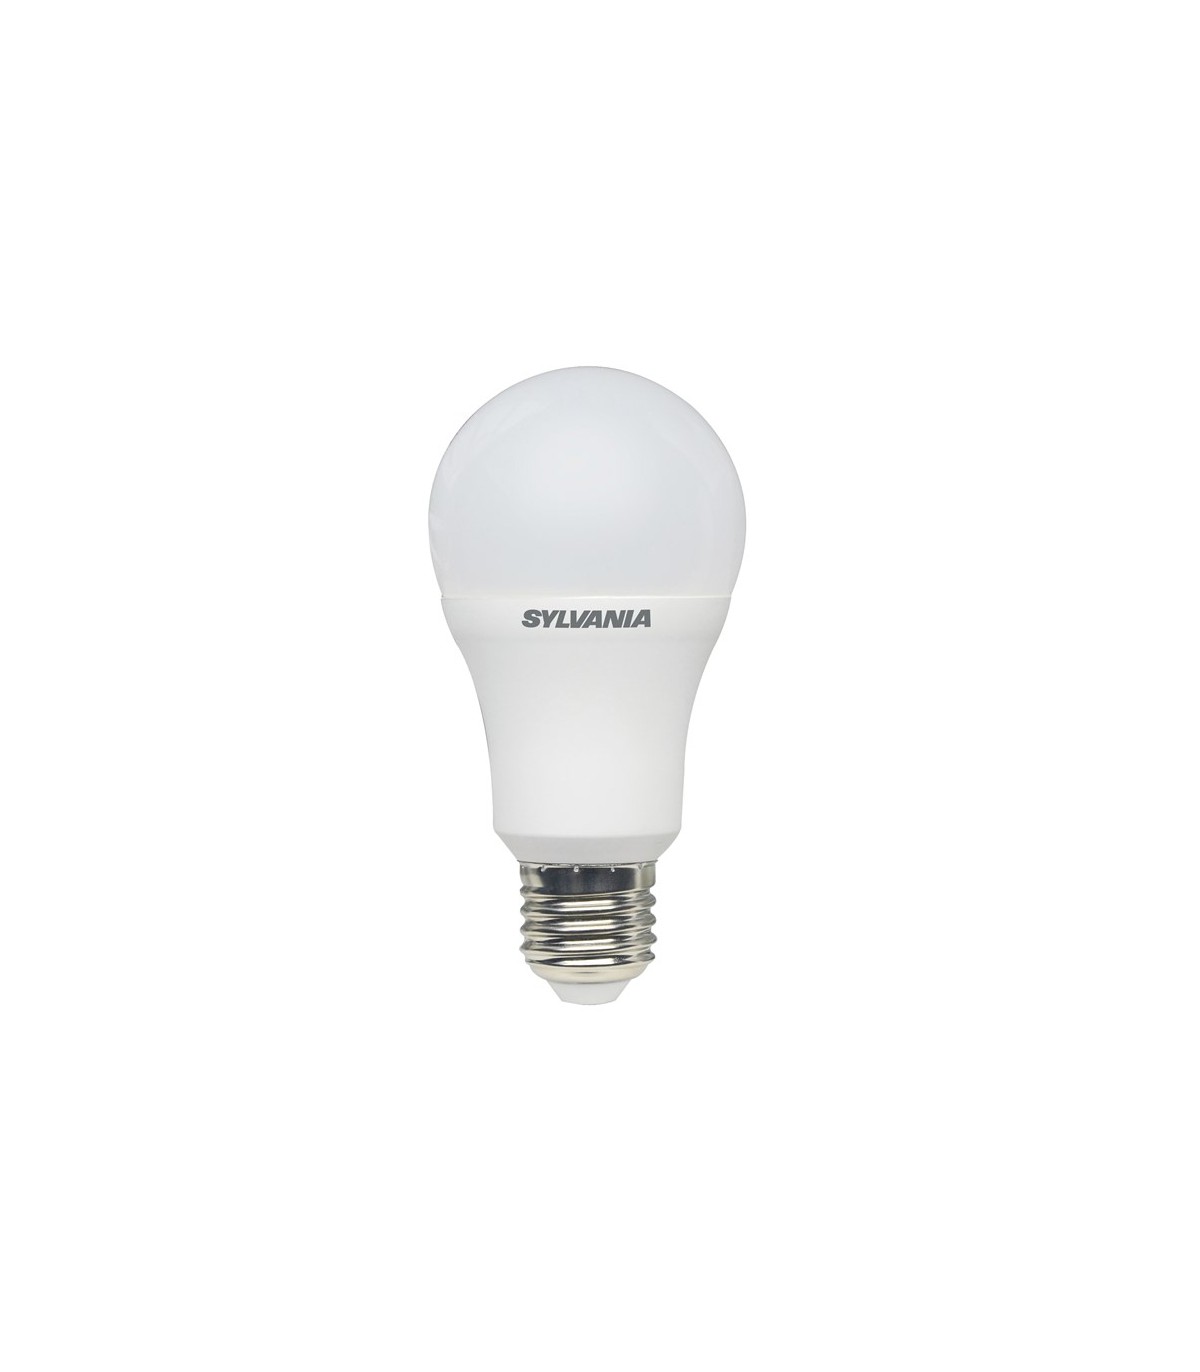 Ampoule LED spot LUXEN PAR30 10W Substitut 60W 700 lumens Blanc froid 4200k  E27